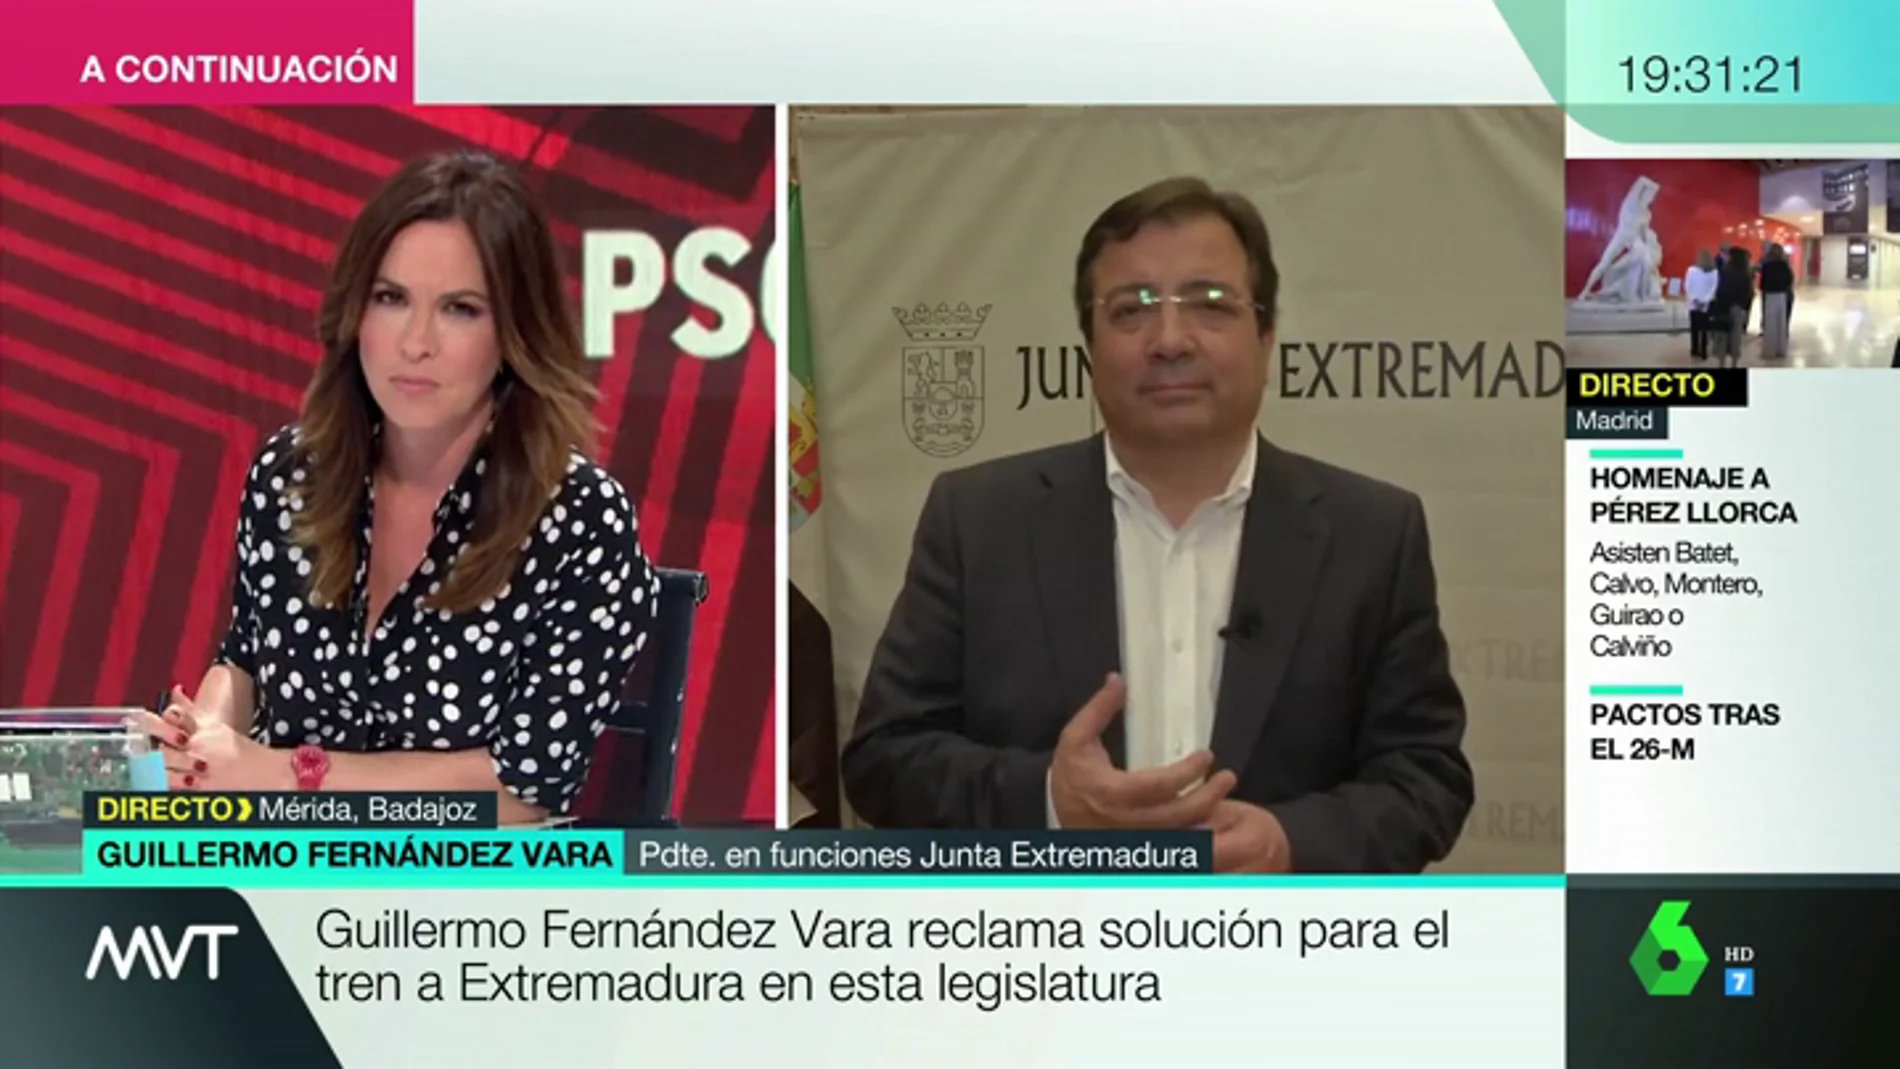 Guillermo Fernández Vara, tras ganar con mayoría absoluta en Extremadura: "El tren es una deuda que tiene contraída España"